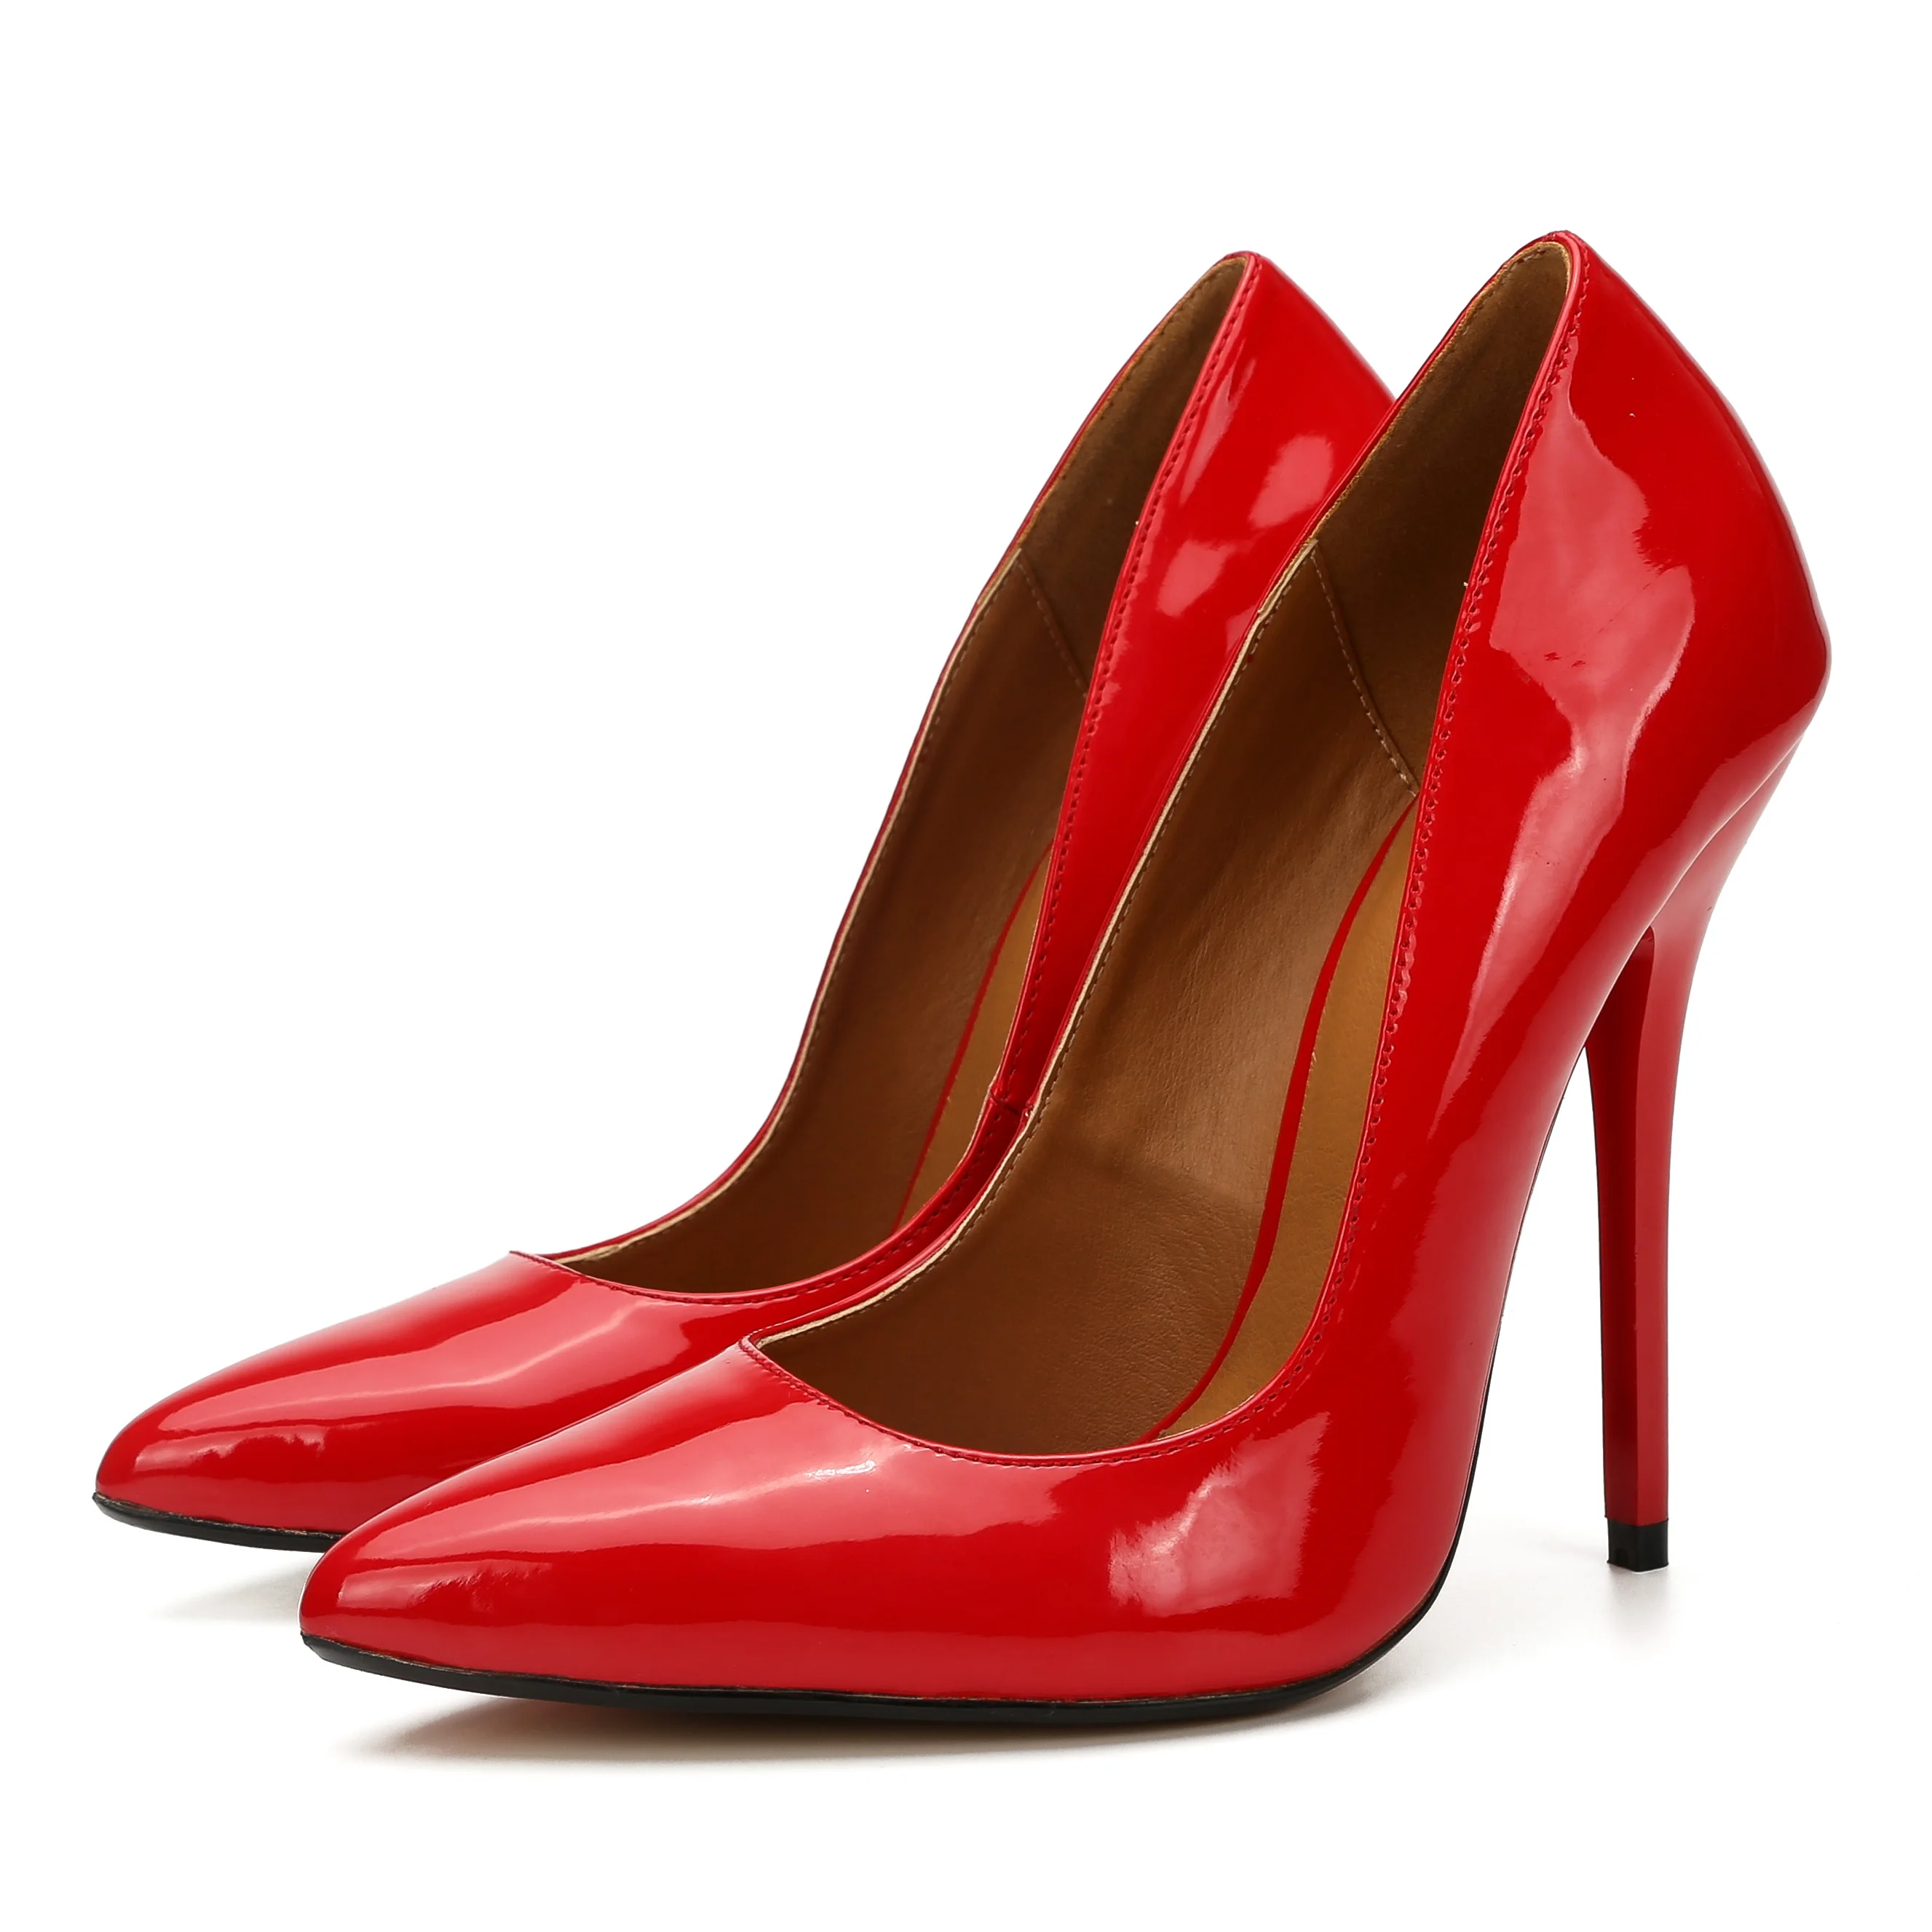 LLXF/Большие размеры: 45, 46, 47, 48, 49; zapatos mujer; женские красные модельные туфли на тонком металлическом каблуке 14 см; Pantent; кожаные туфли-лодочки с острым носком для костюмированной вечеринки